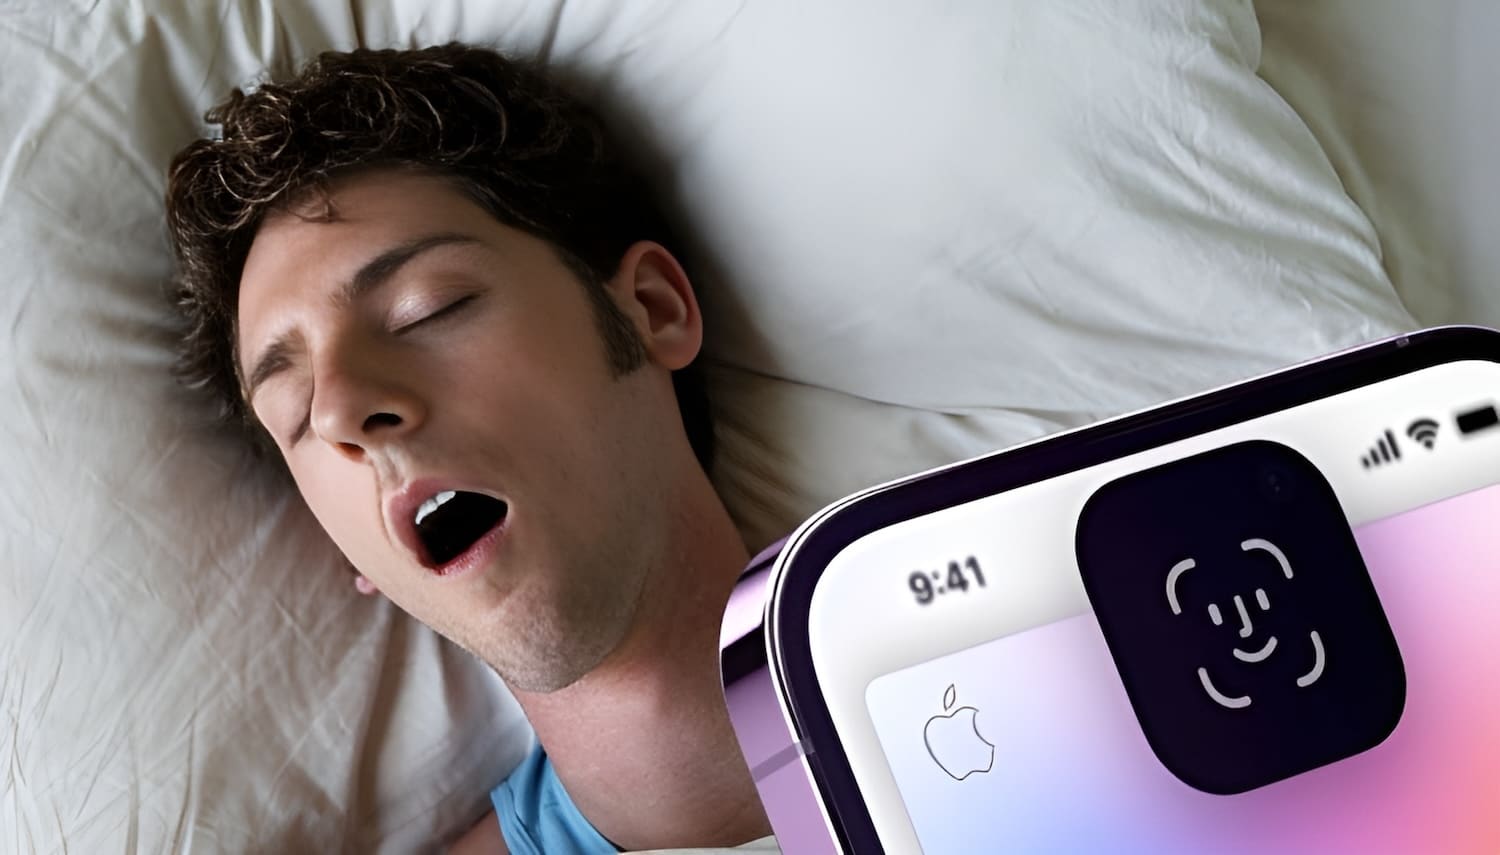 Можно ли разблокировать iPhone лицом мужа (жены), пока он (она) спит?